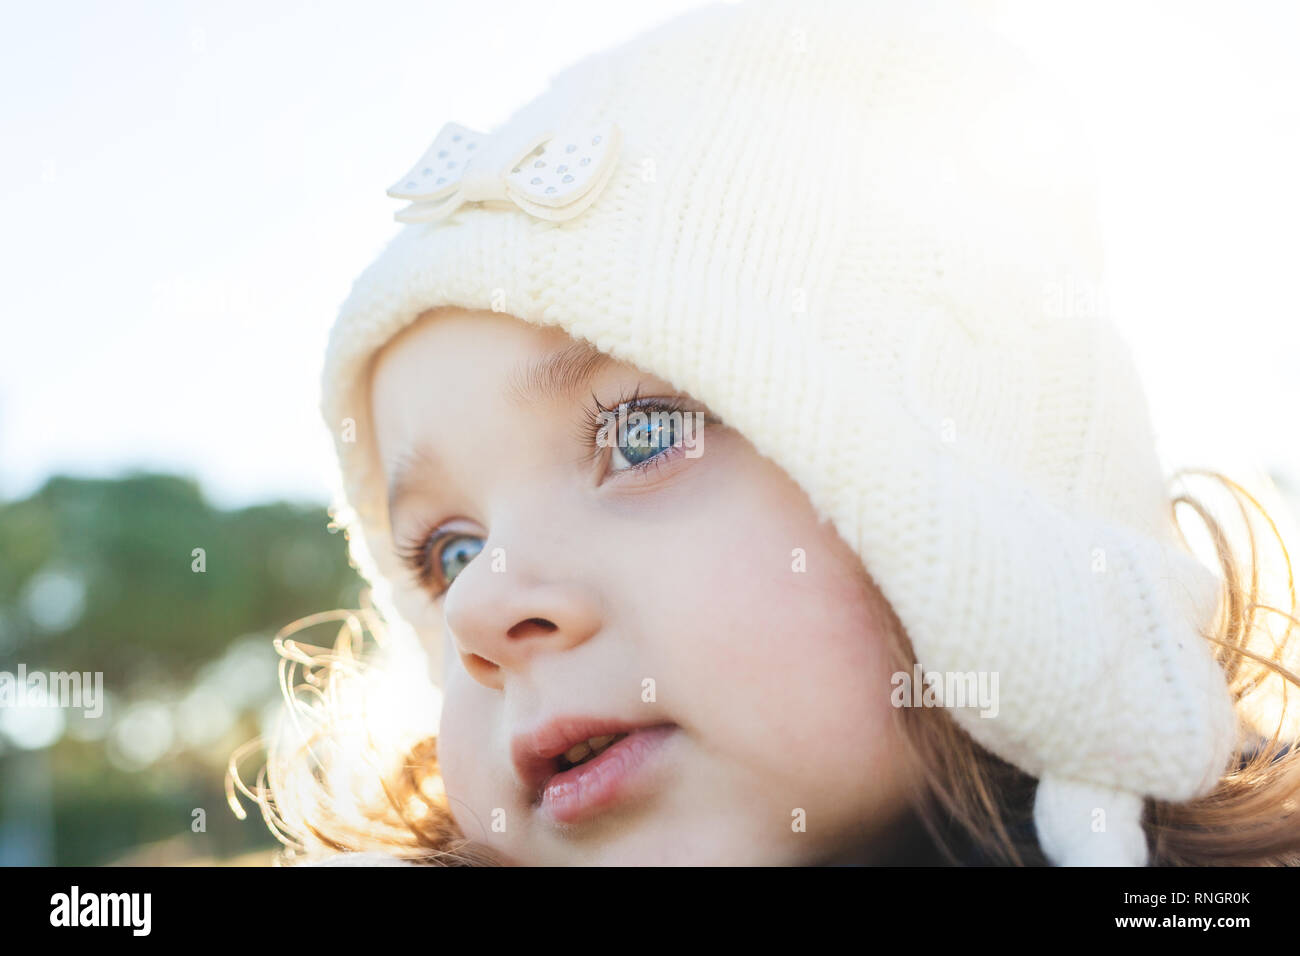 Adorable kleinkind Mädchen von zwei Jahren. - Nahaufnahme, Porträt, auf dem blauen Augen konzentrieren. Stockfoto